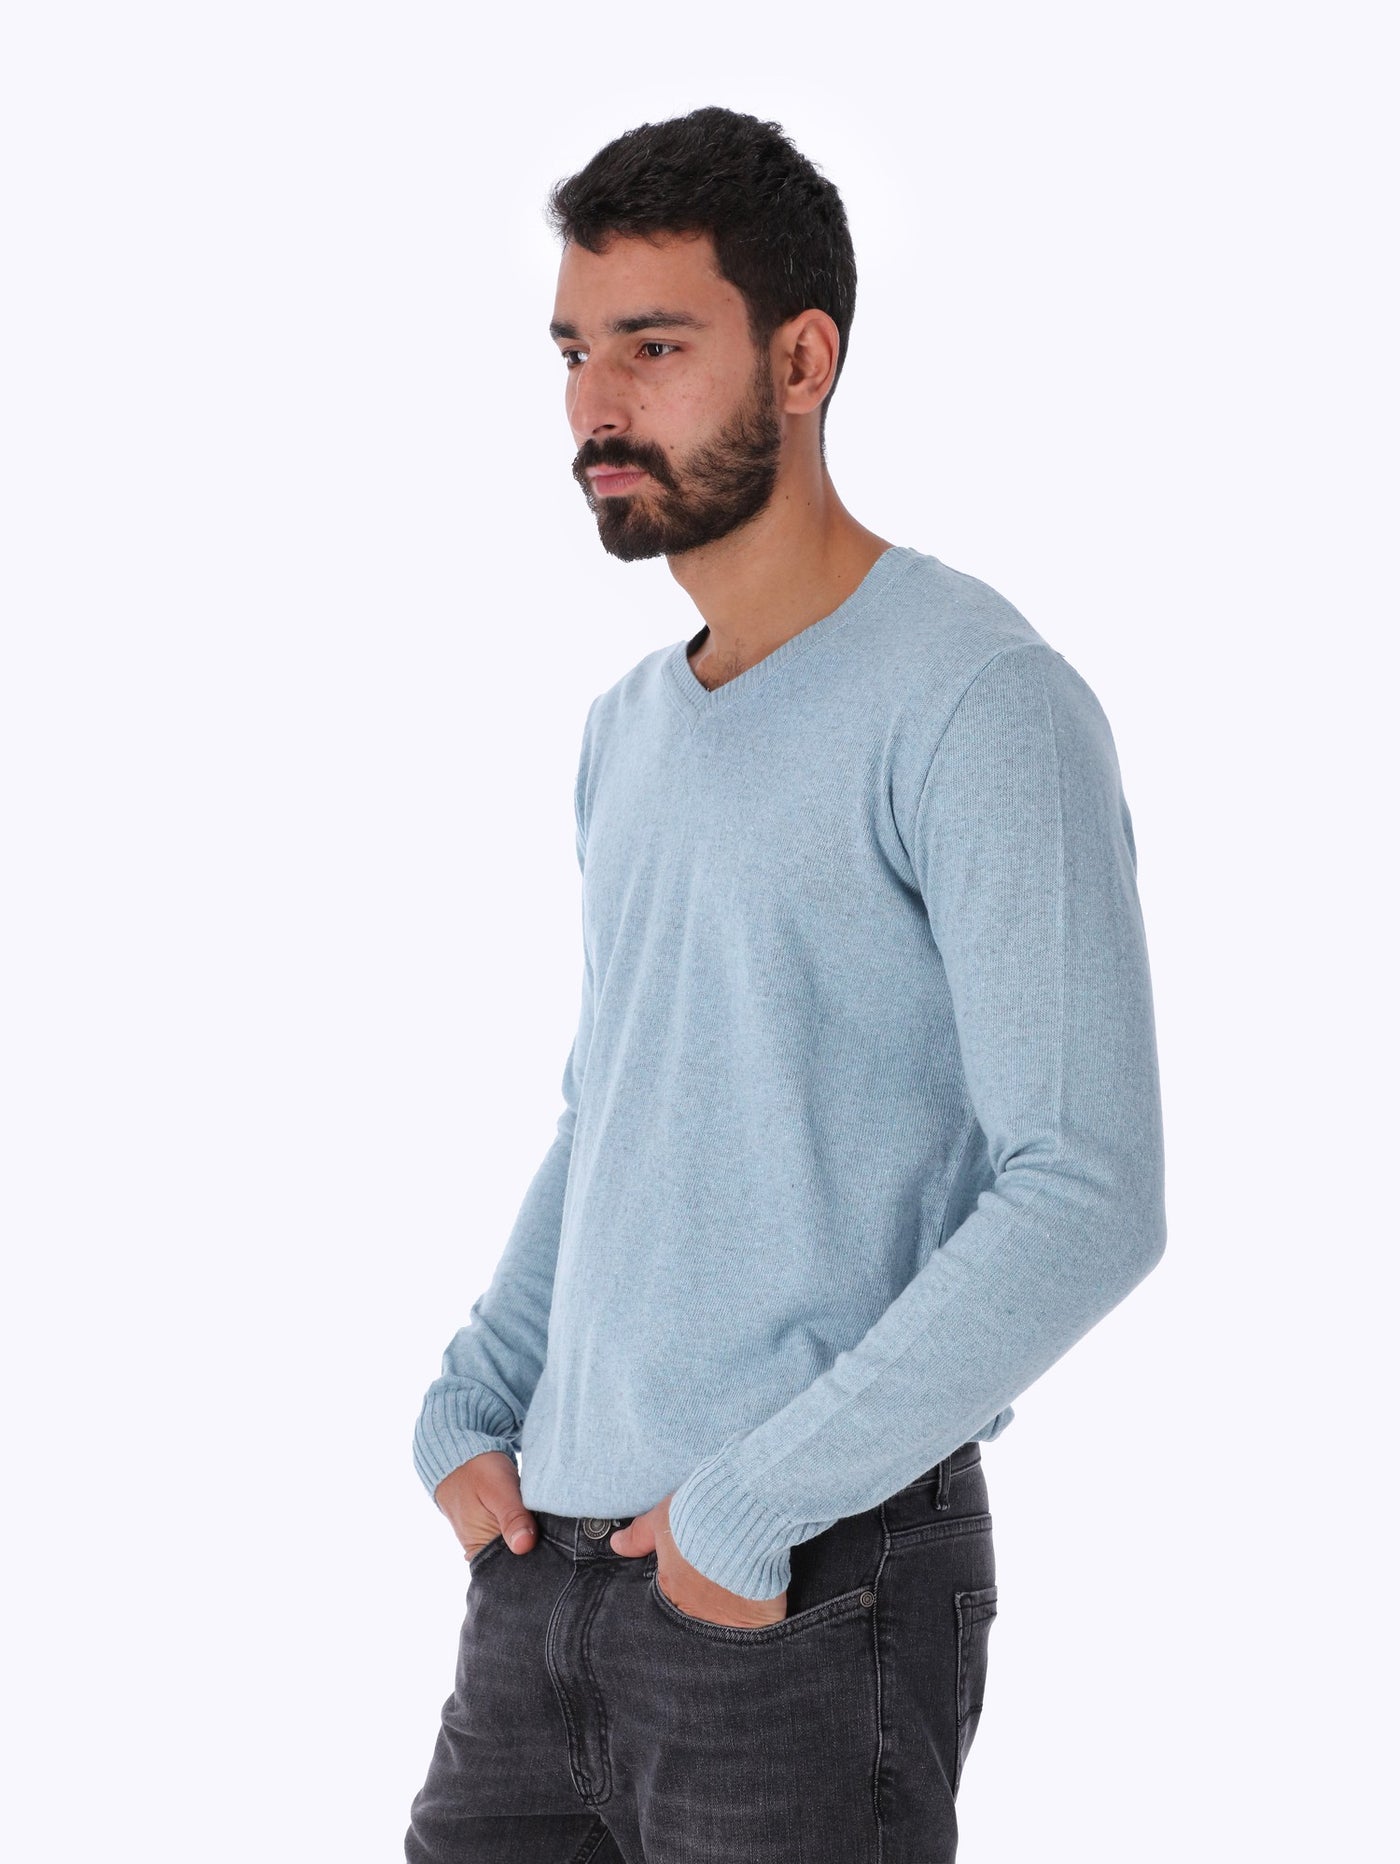 Sweater - V Neck